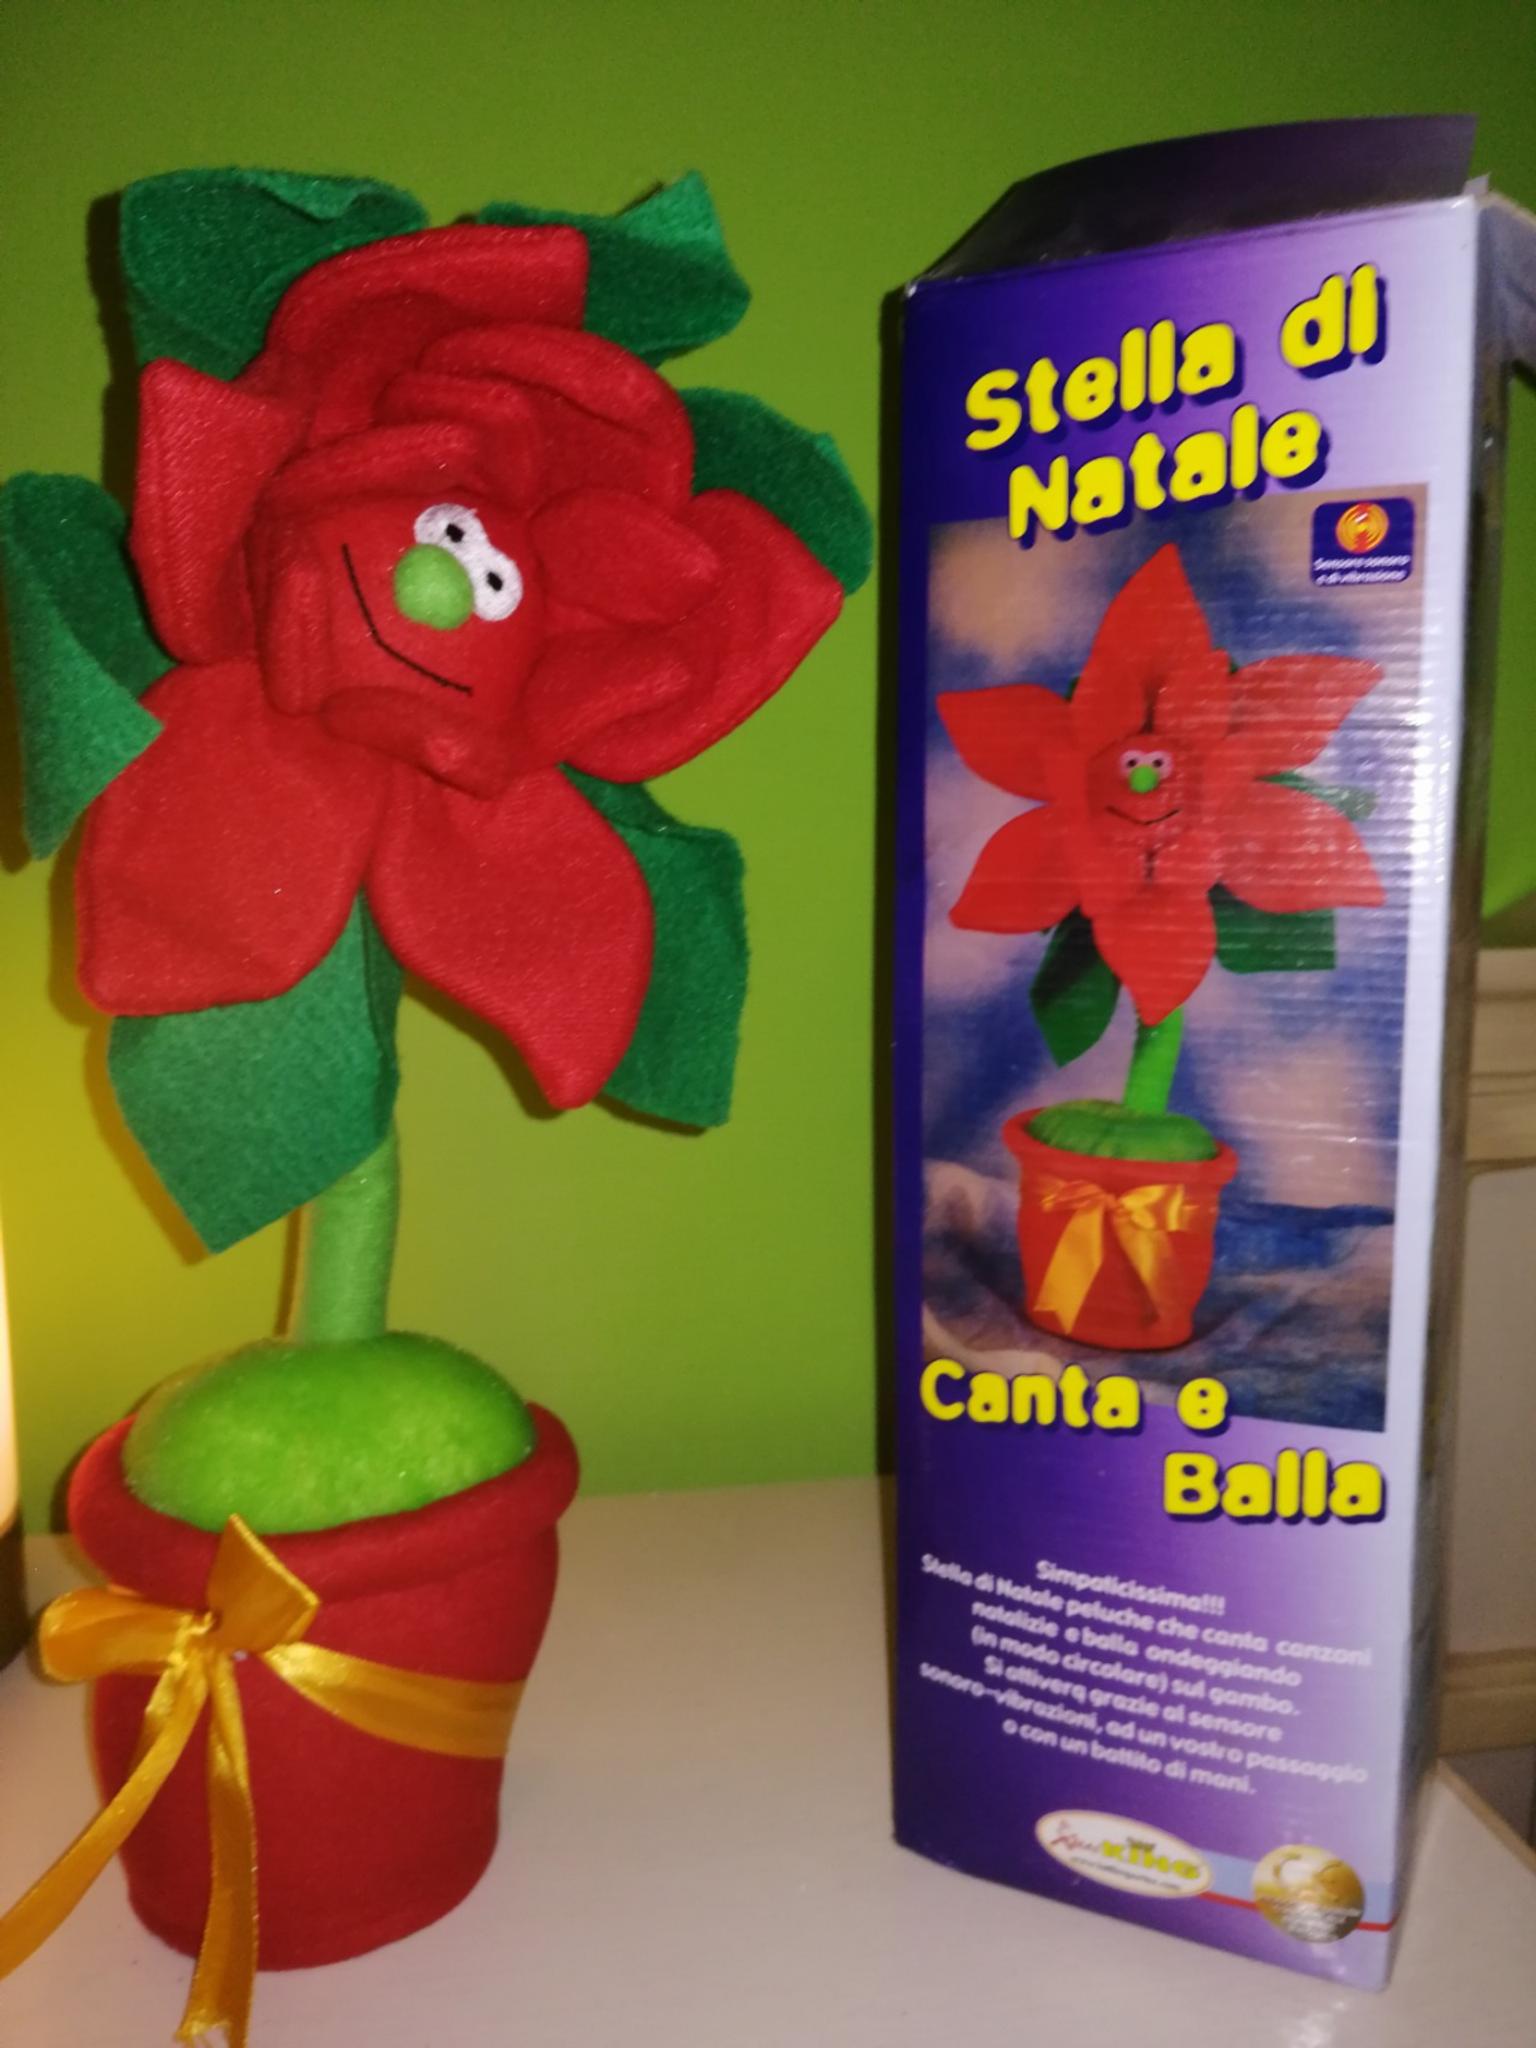 La Stella Di Natale Canzone.Stella Di Natale Che Canta E Balla In 71100 Foggia For 2 00 For Sale Shpock